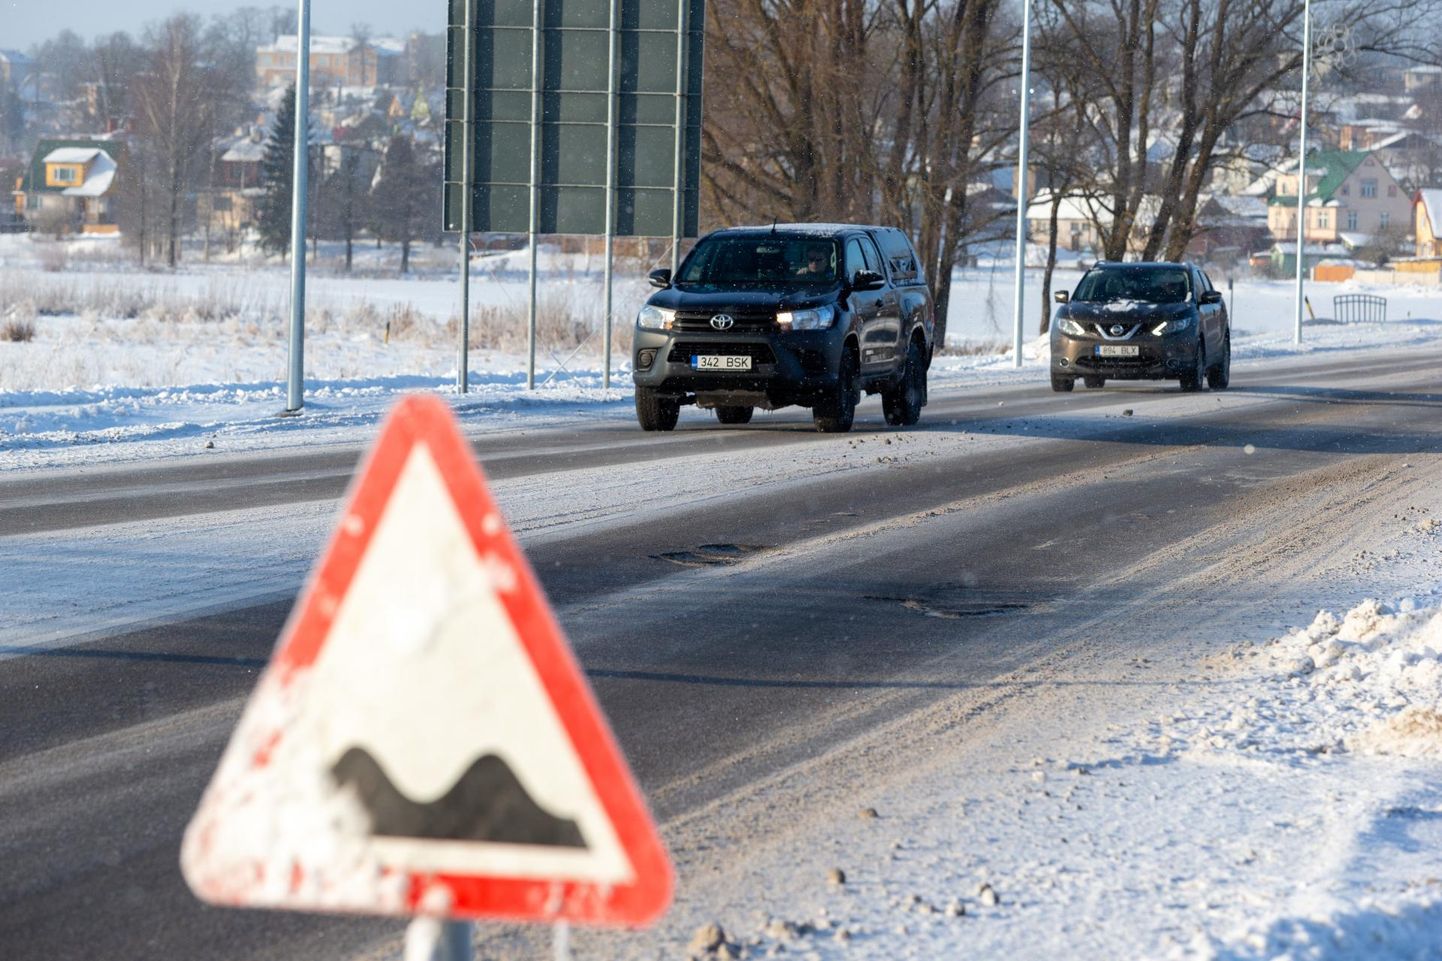 Sõidukeid varitsevast ebatasasest teelõigust annab Viljandi piiril Tartu maanteel teada liiklusmärk. Pilt on tehtud sel esmaspäeval.